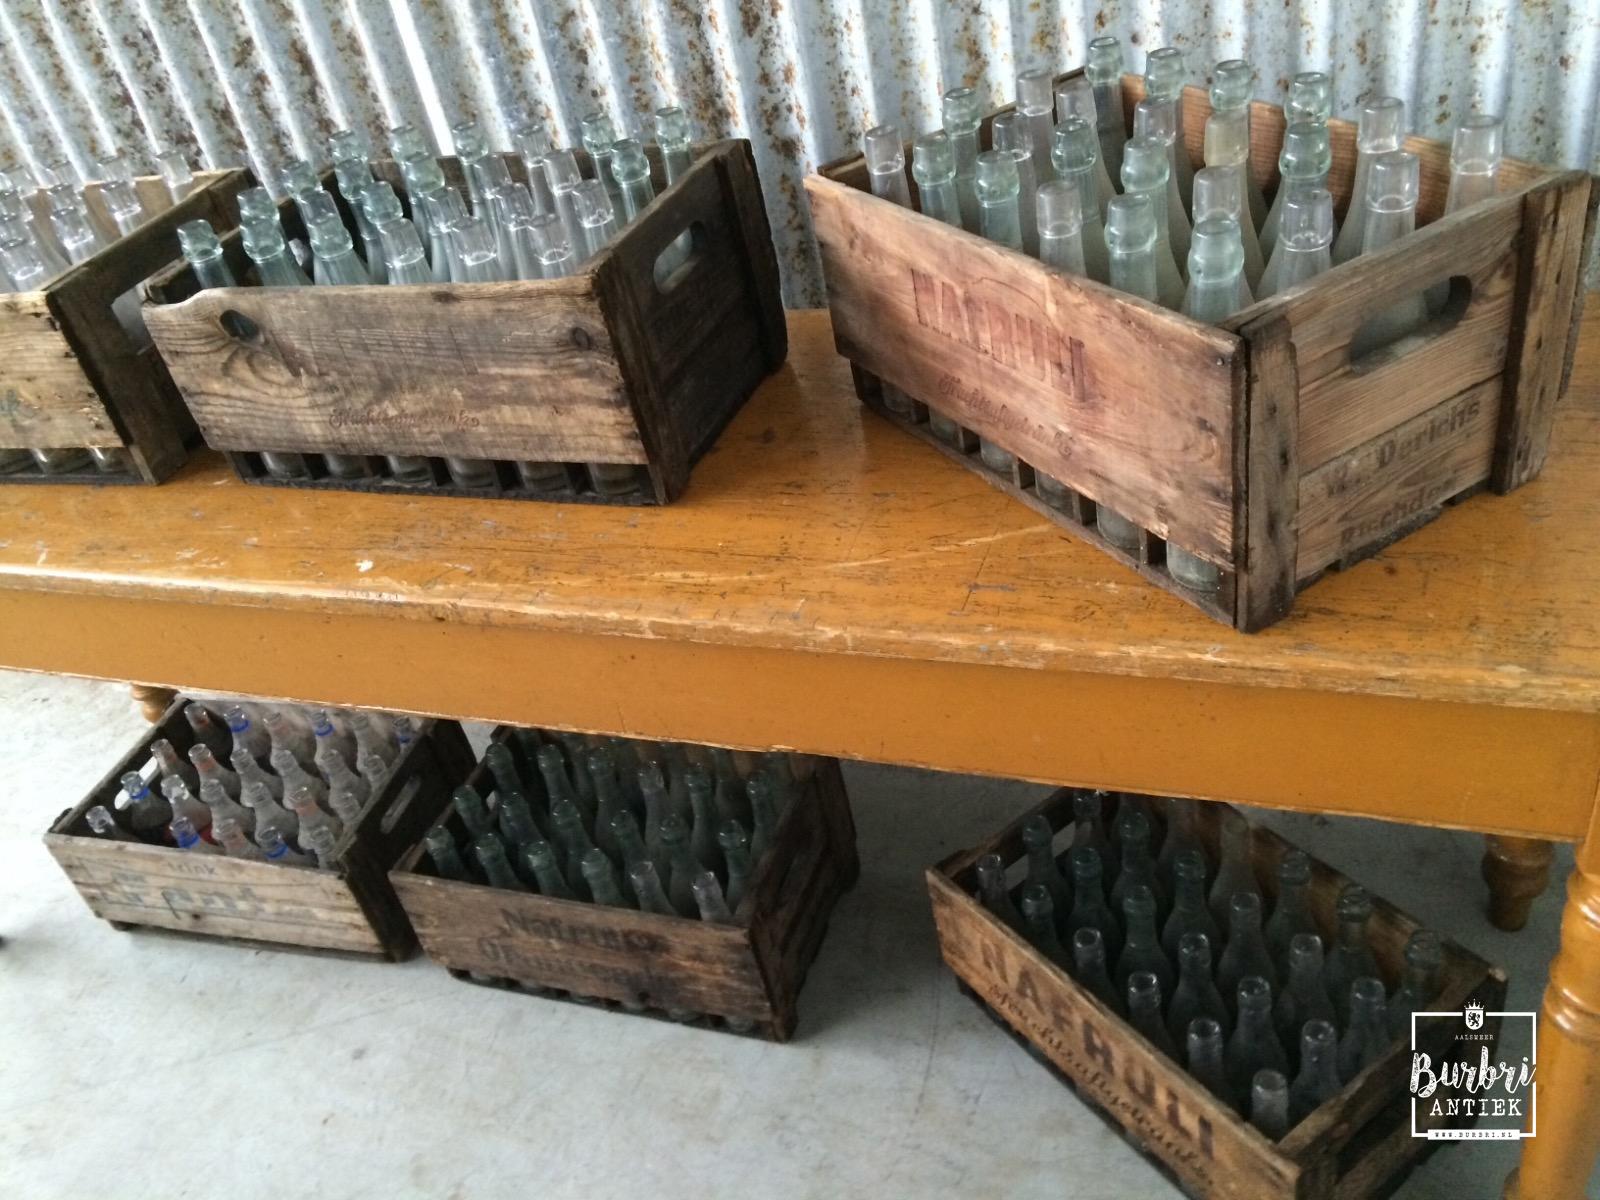 Encommium Jet Weiland Oude houten kratten met oude flessen - Decoratie - Industrieel - Burbri